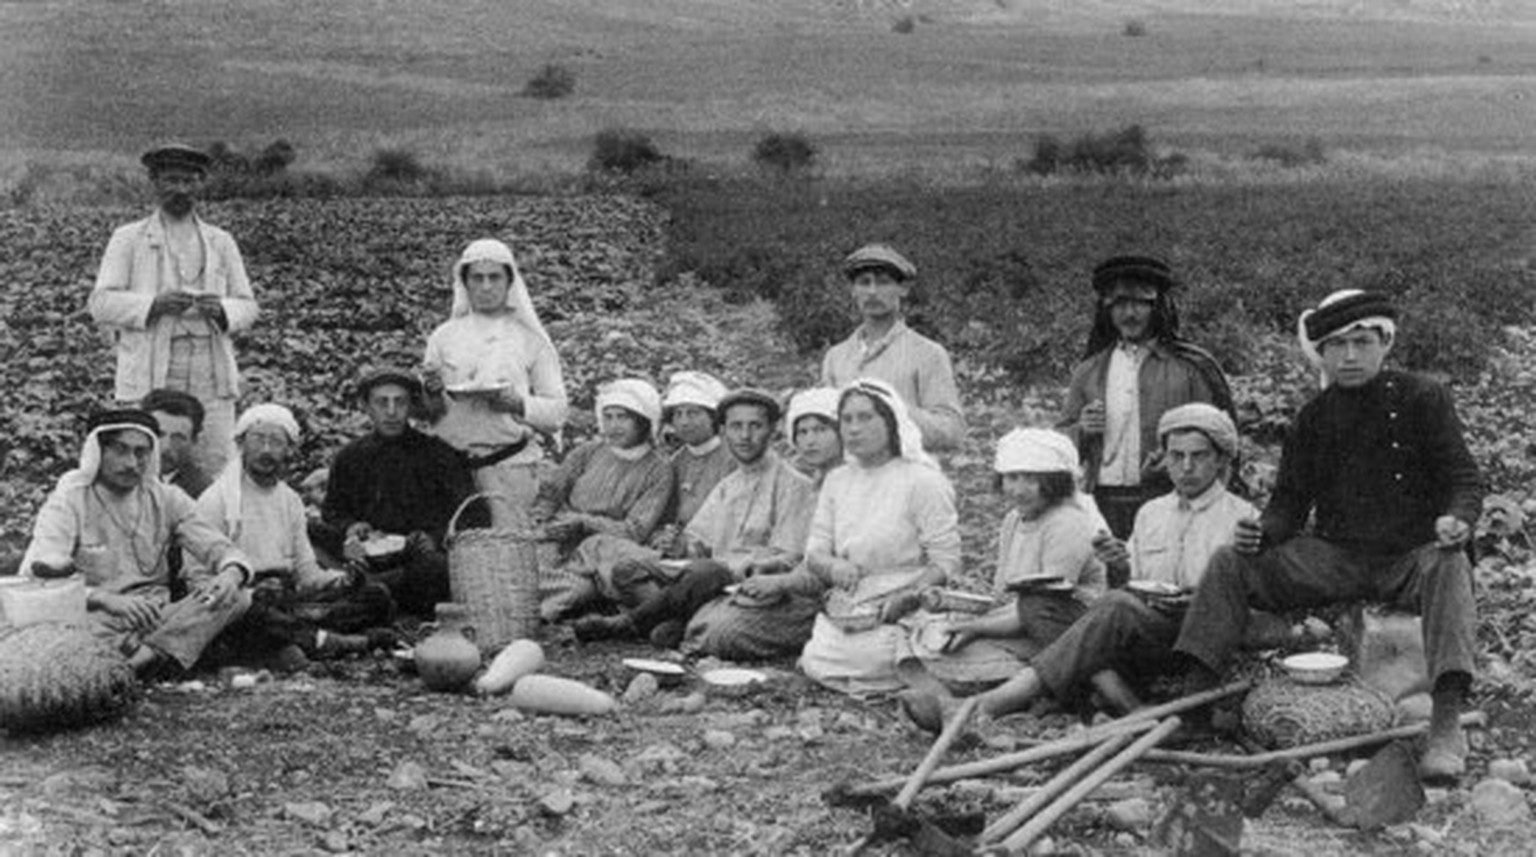 Palästina: Jüdische Einwanderer der zweiten Alija, Feld bei Migdal (1912)
https://de.wikipedia.org/wiki/Alija#/media/Datei:Second_aliyah_Pioneers_in_Migdal_1912_in_kuffiyeh.jpg